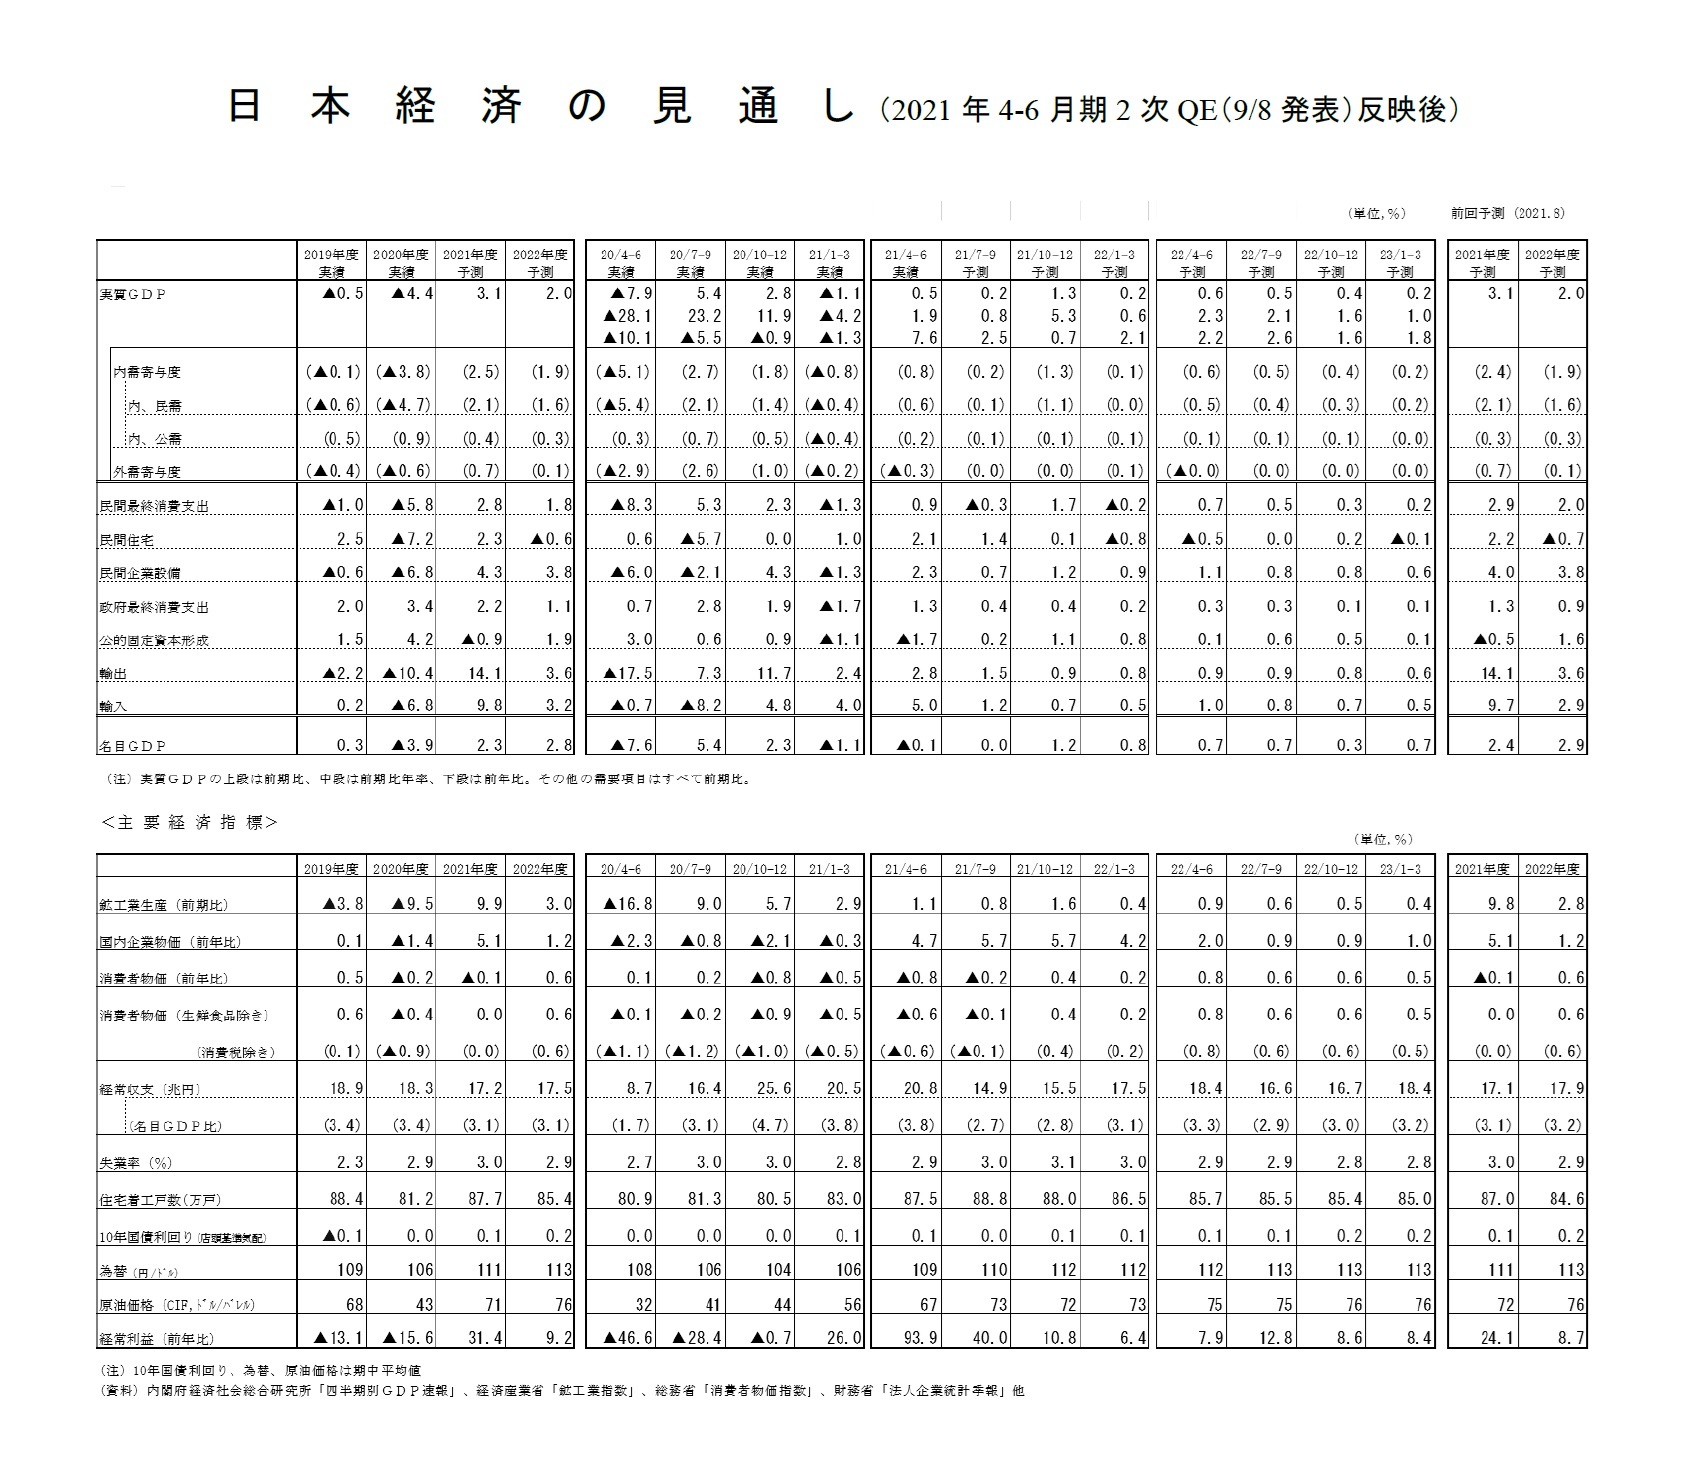 日本経済の見通し（2021年4-6月期2次QE（9/8発表）反映後